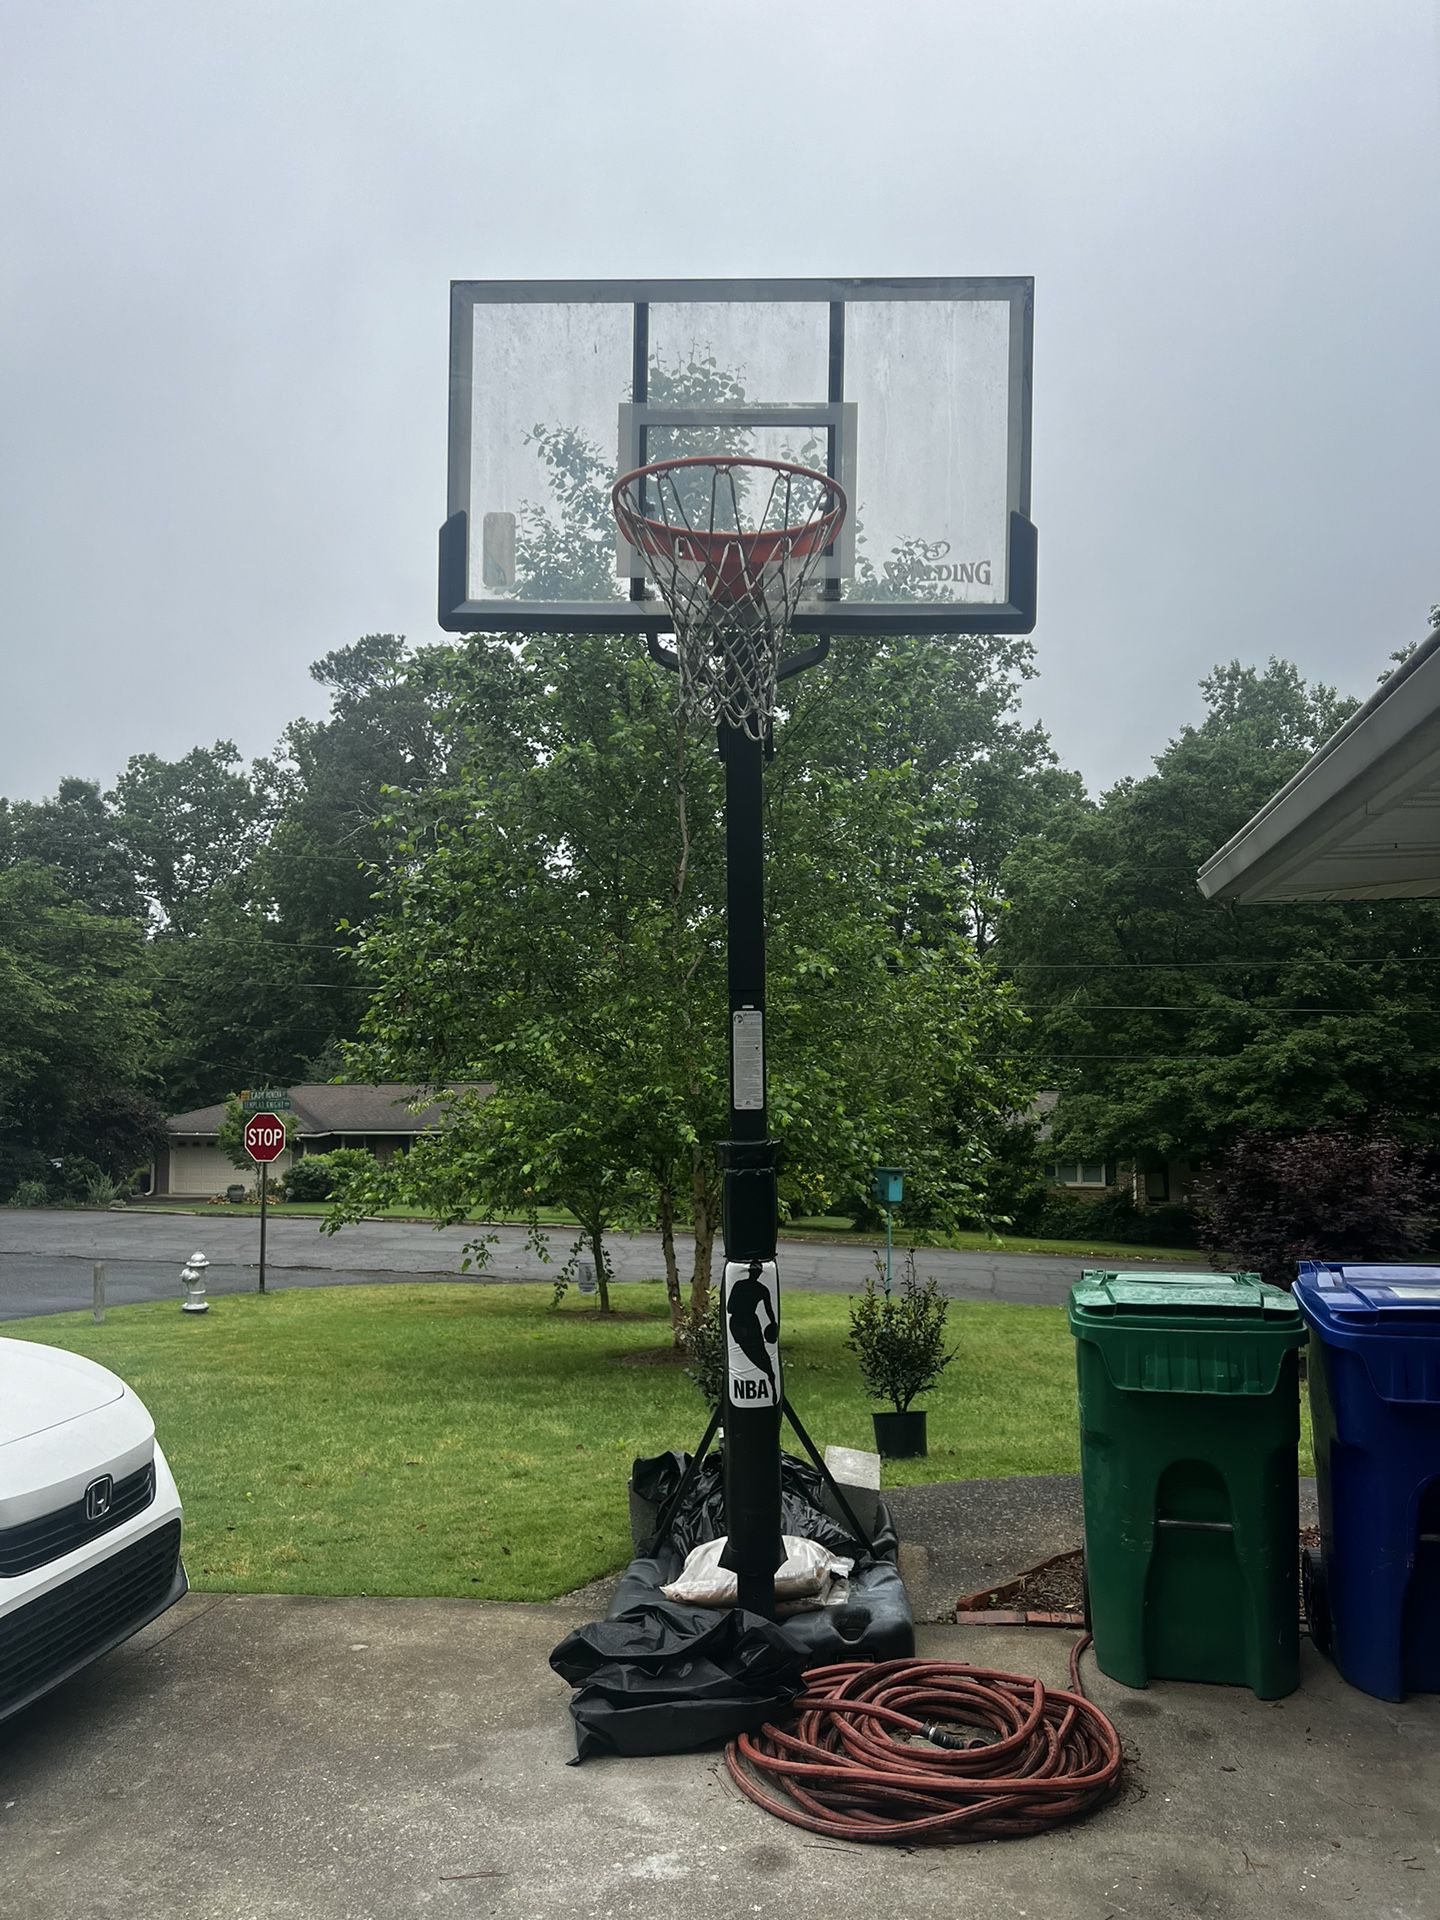 Spalding Basketball Hoop